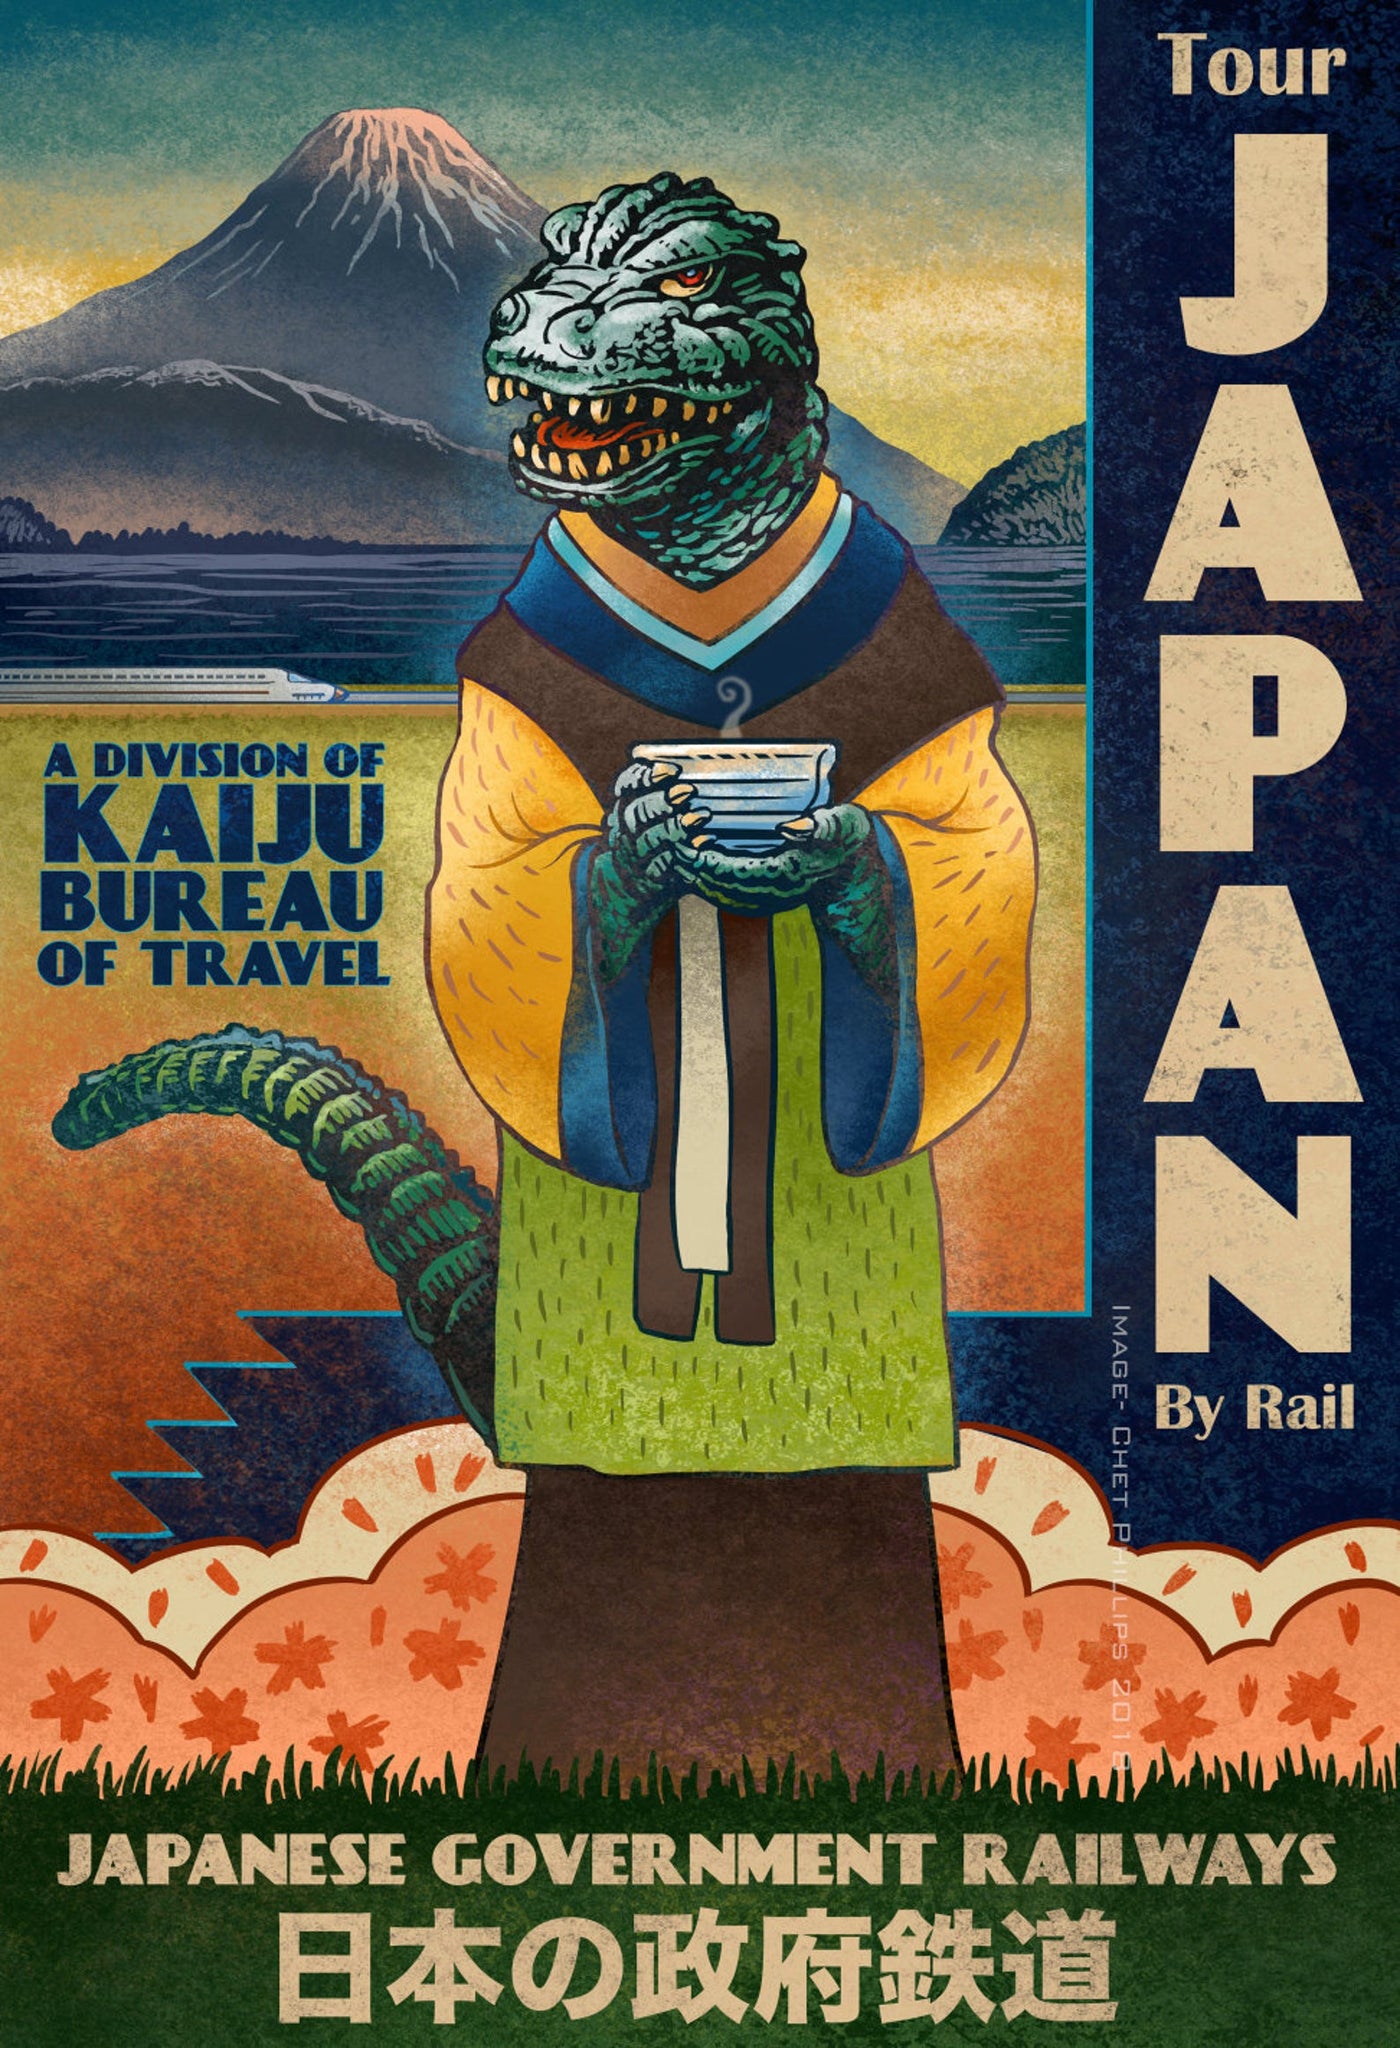 Tour Japan- Kaiju Tourism Bureau print